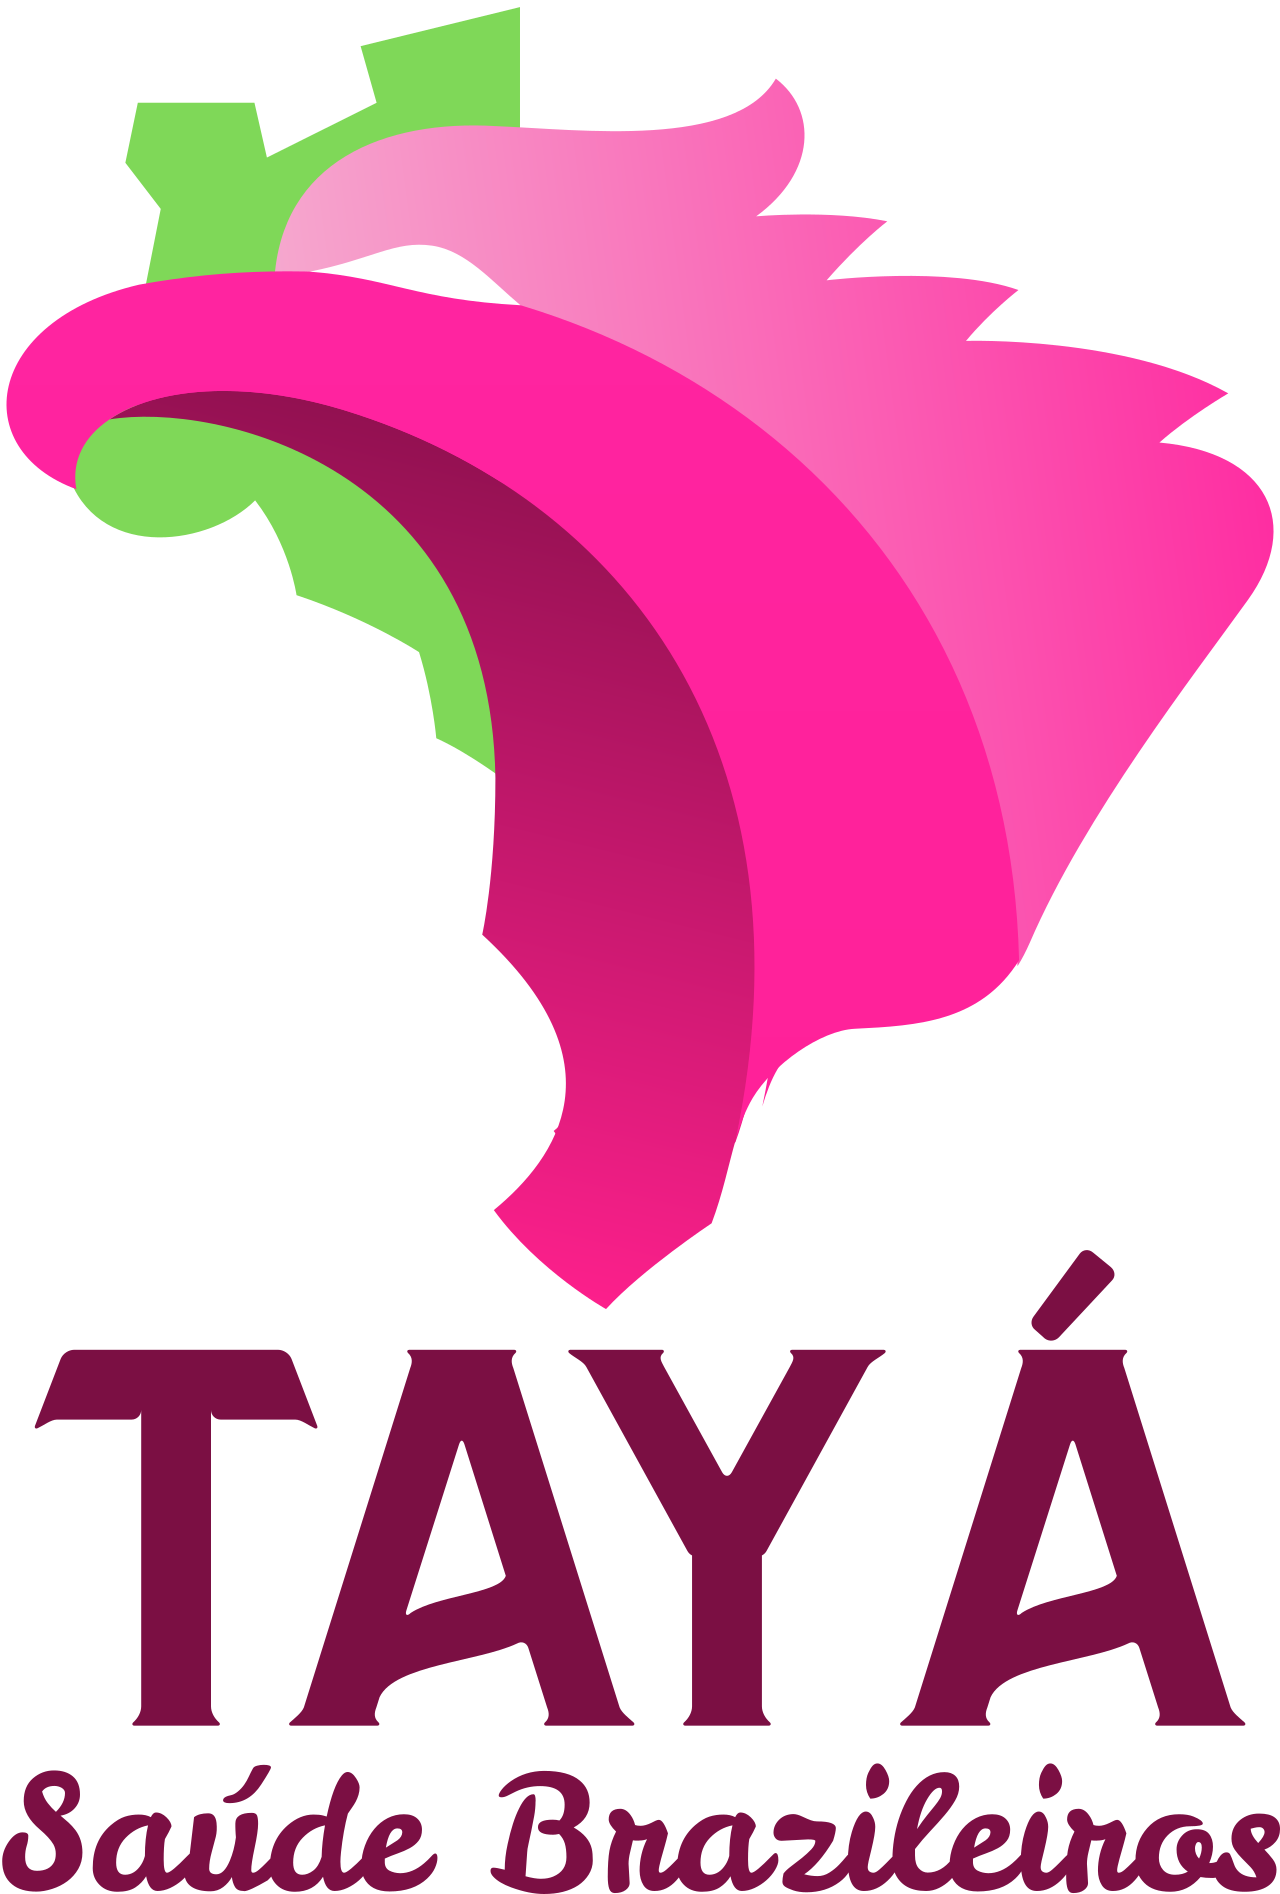 TAYÁ's logo